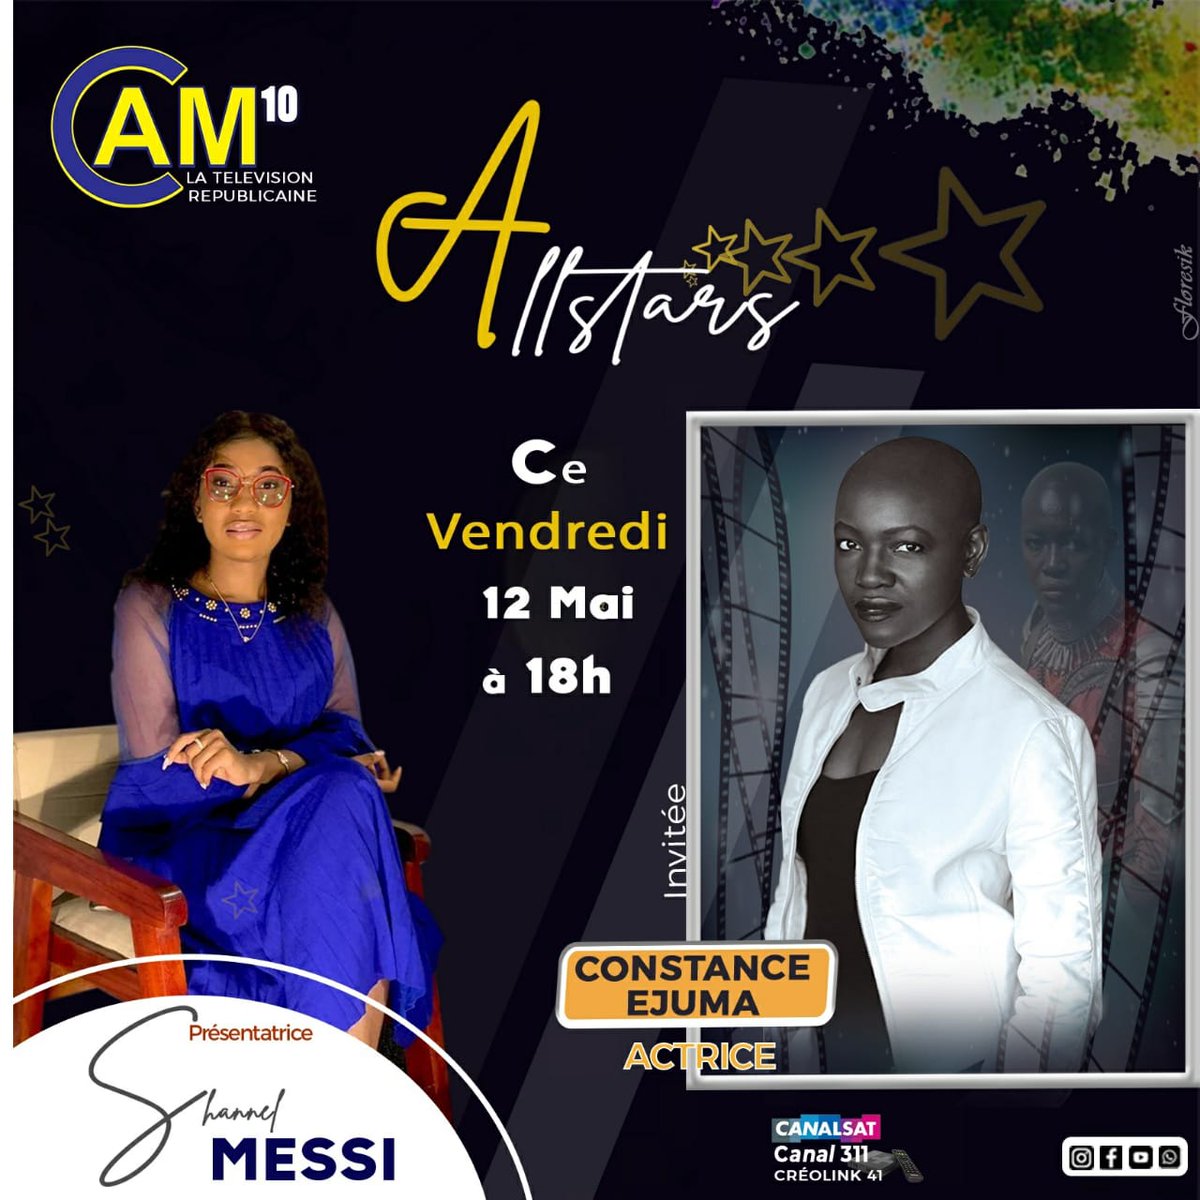 Ce vendredi 12 mai 2023 All-Stars Officiel  vous présente Dr Constance Ejuma. Elle partagera avec vous sa carrière à partir du questionnaire magique de lafemme_du_detail 🎤🎬. Ce sera en live Facebook, #canalplus311 , et #creolink #canal41_45 exactement à 18h heure du #Cameroun.